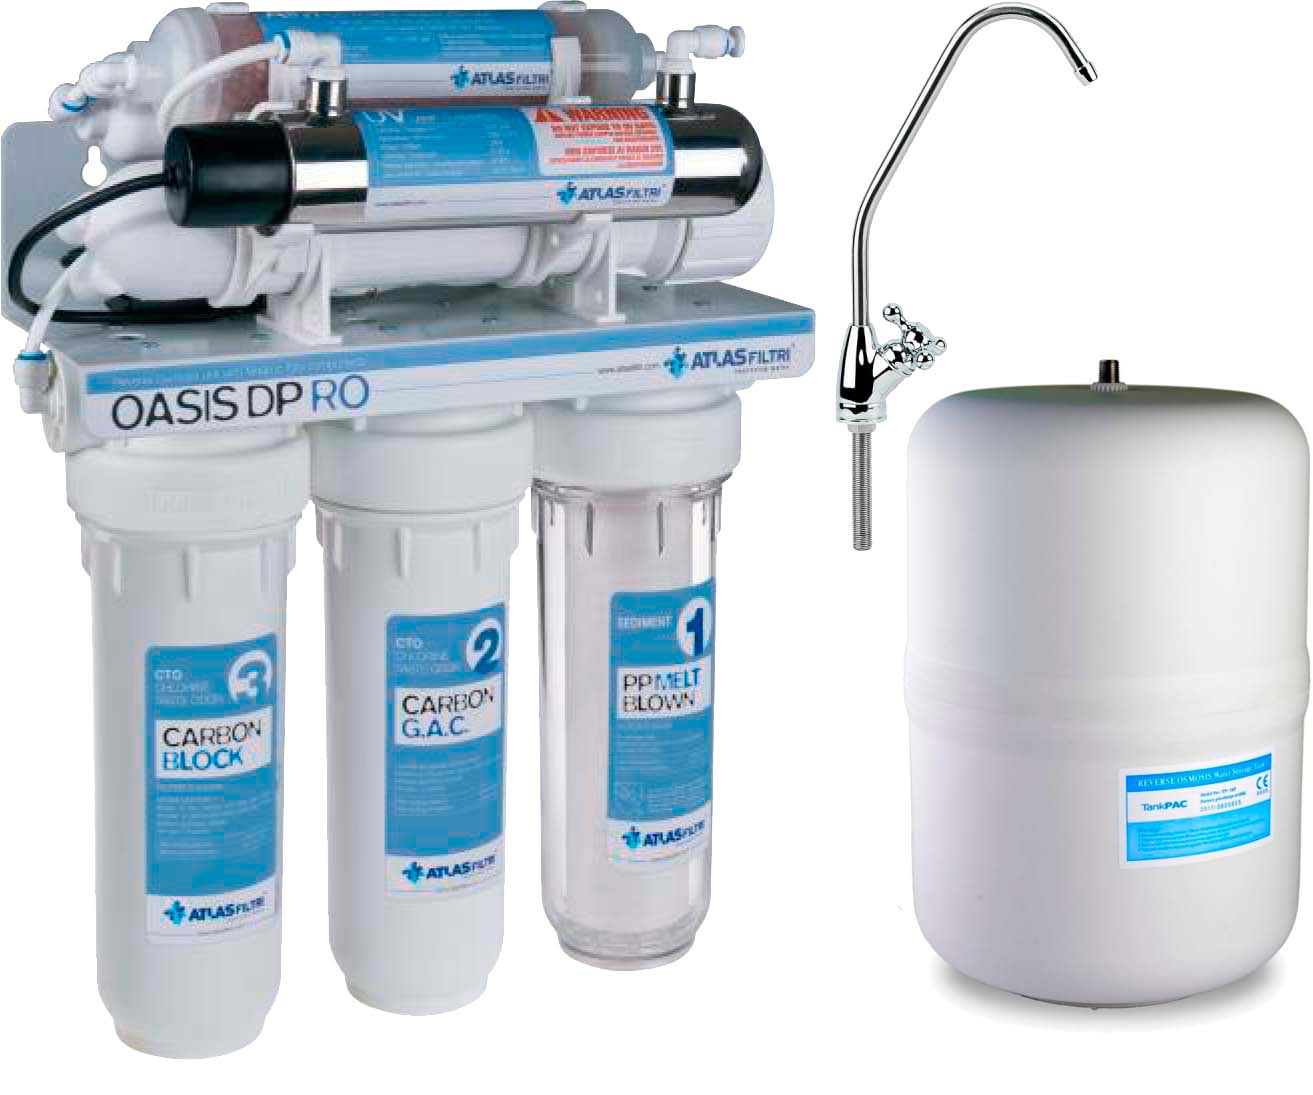 Фільтр 6 етапів очистки Atlas Filtri Oasis DP UV лампа, мінералізатор (RE6075330)